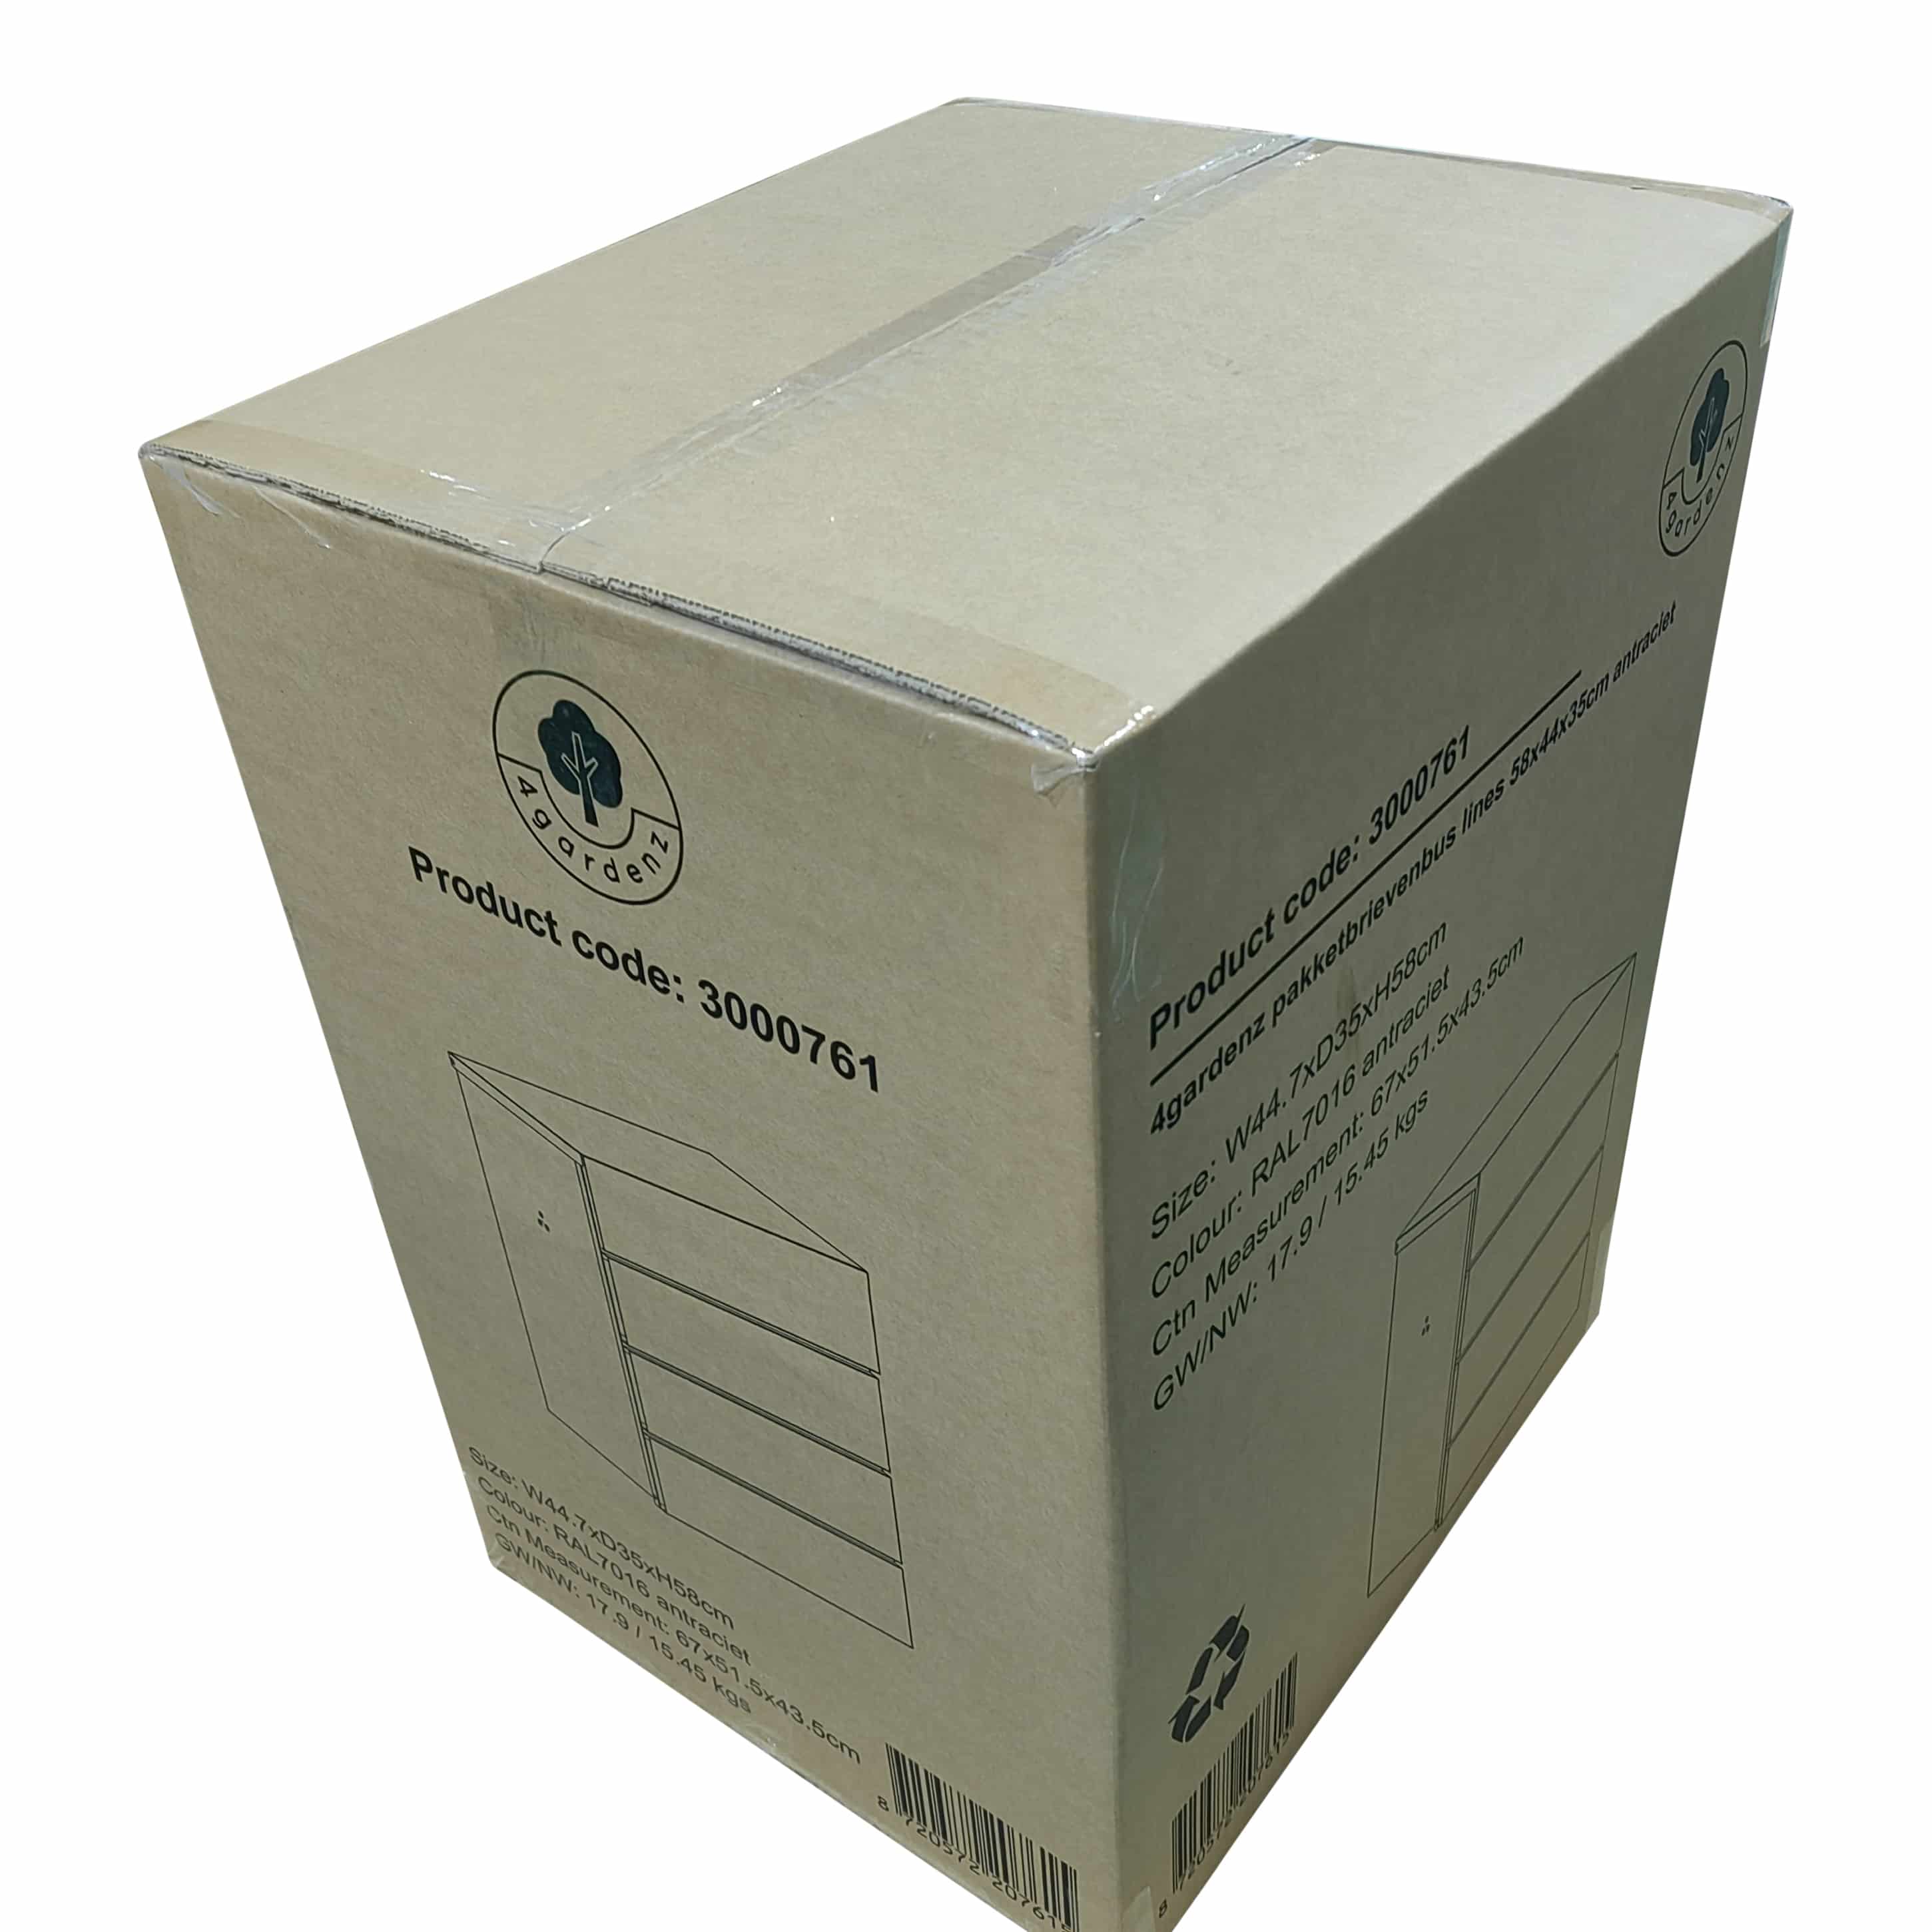 4gardenz® Pakketbrievenbus Lines Wandmodel - Anti-diefstal Pakketbox Hangend - Weerbestendig